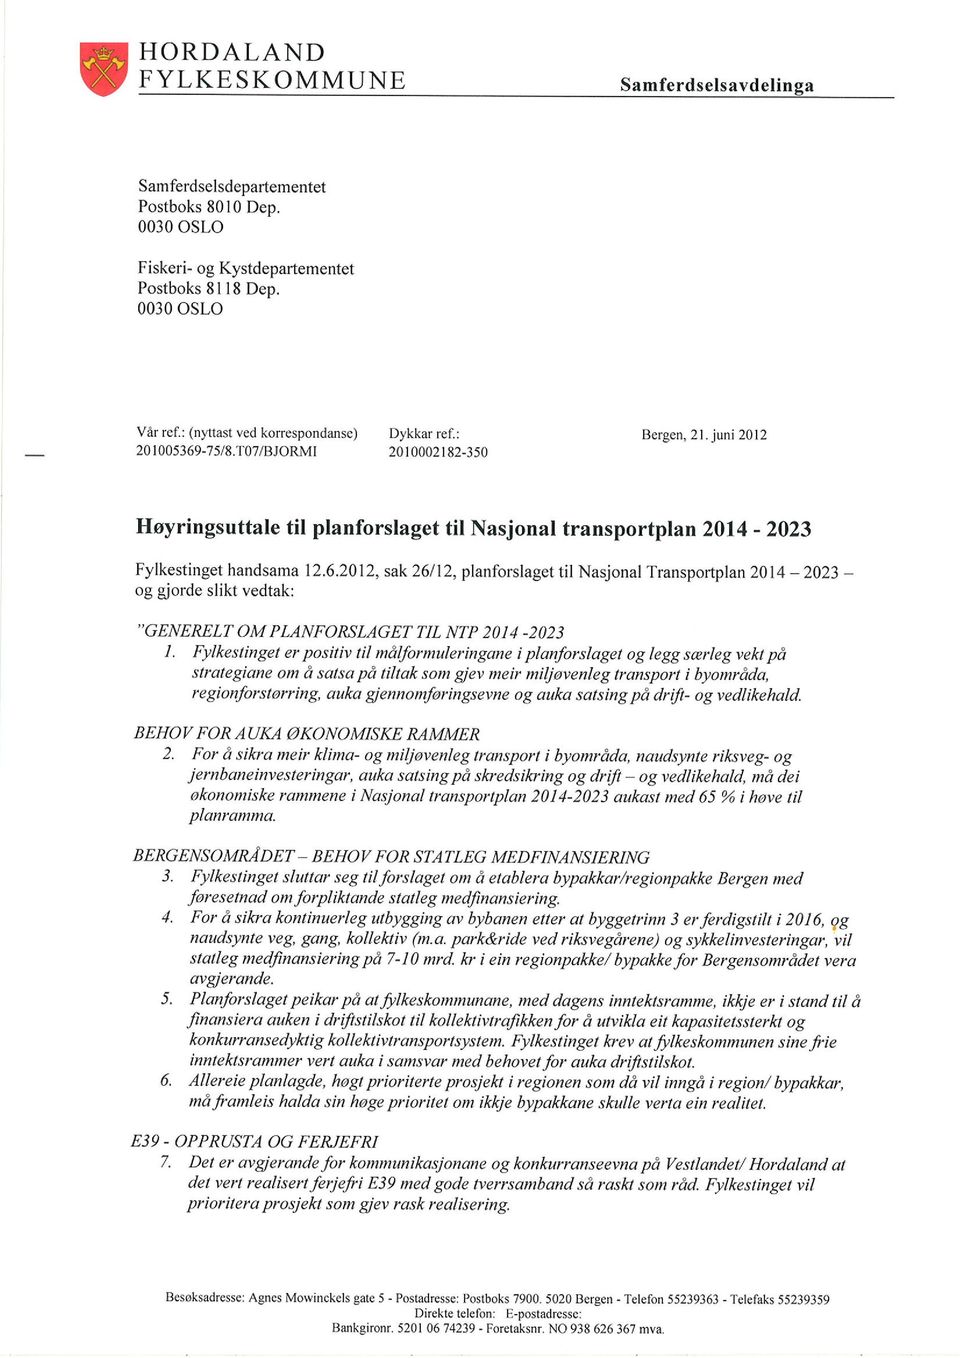 T07IBJORMI 20 t 0002 t 82-350 Høyringsuttale til planforslaget til Nasjonal transportplan 2014-2023 Fylkestinget handsama 12.6.